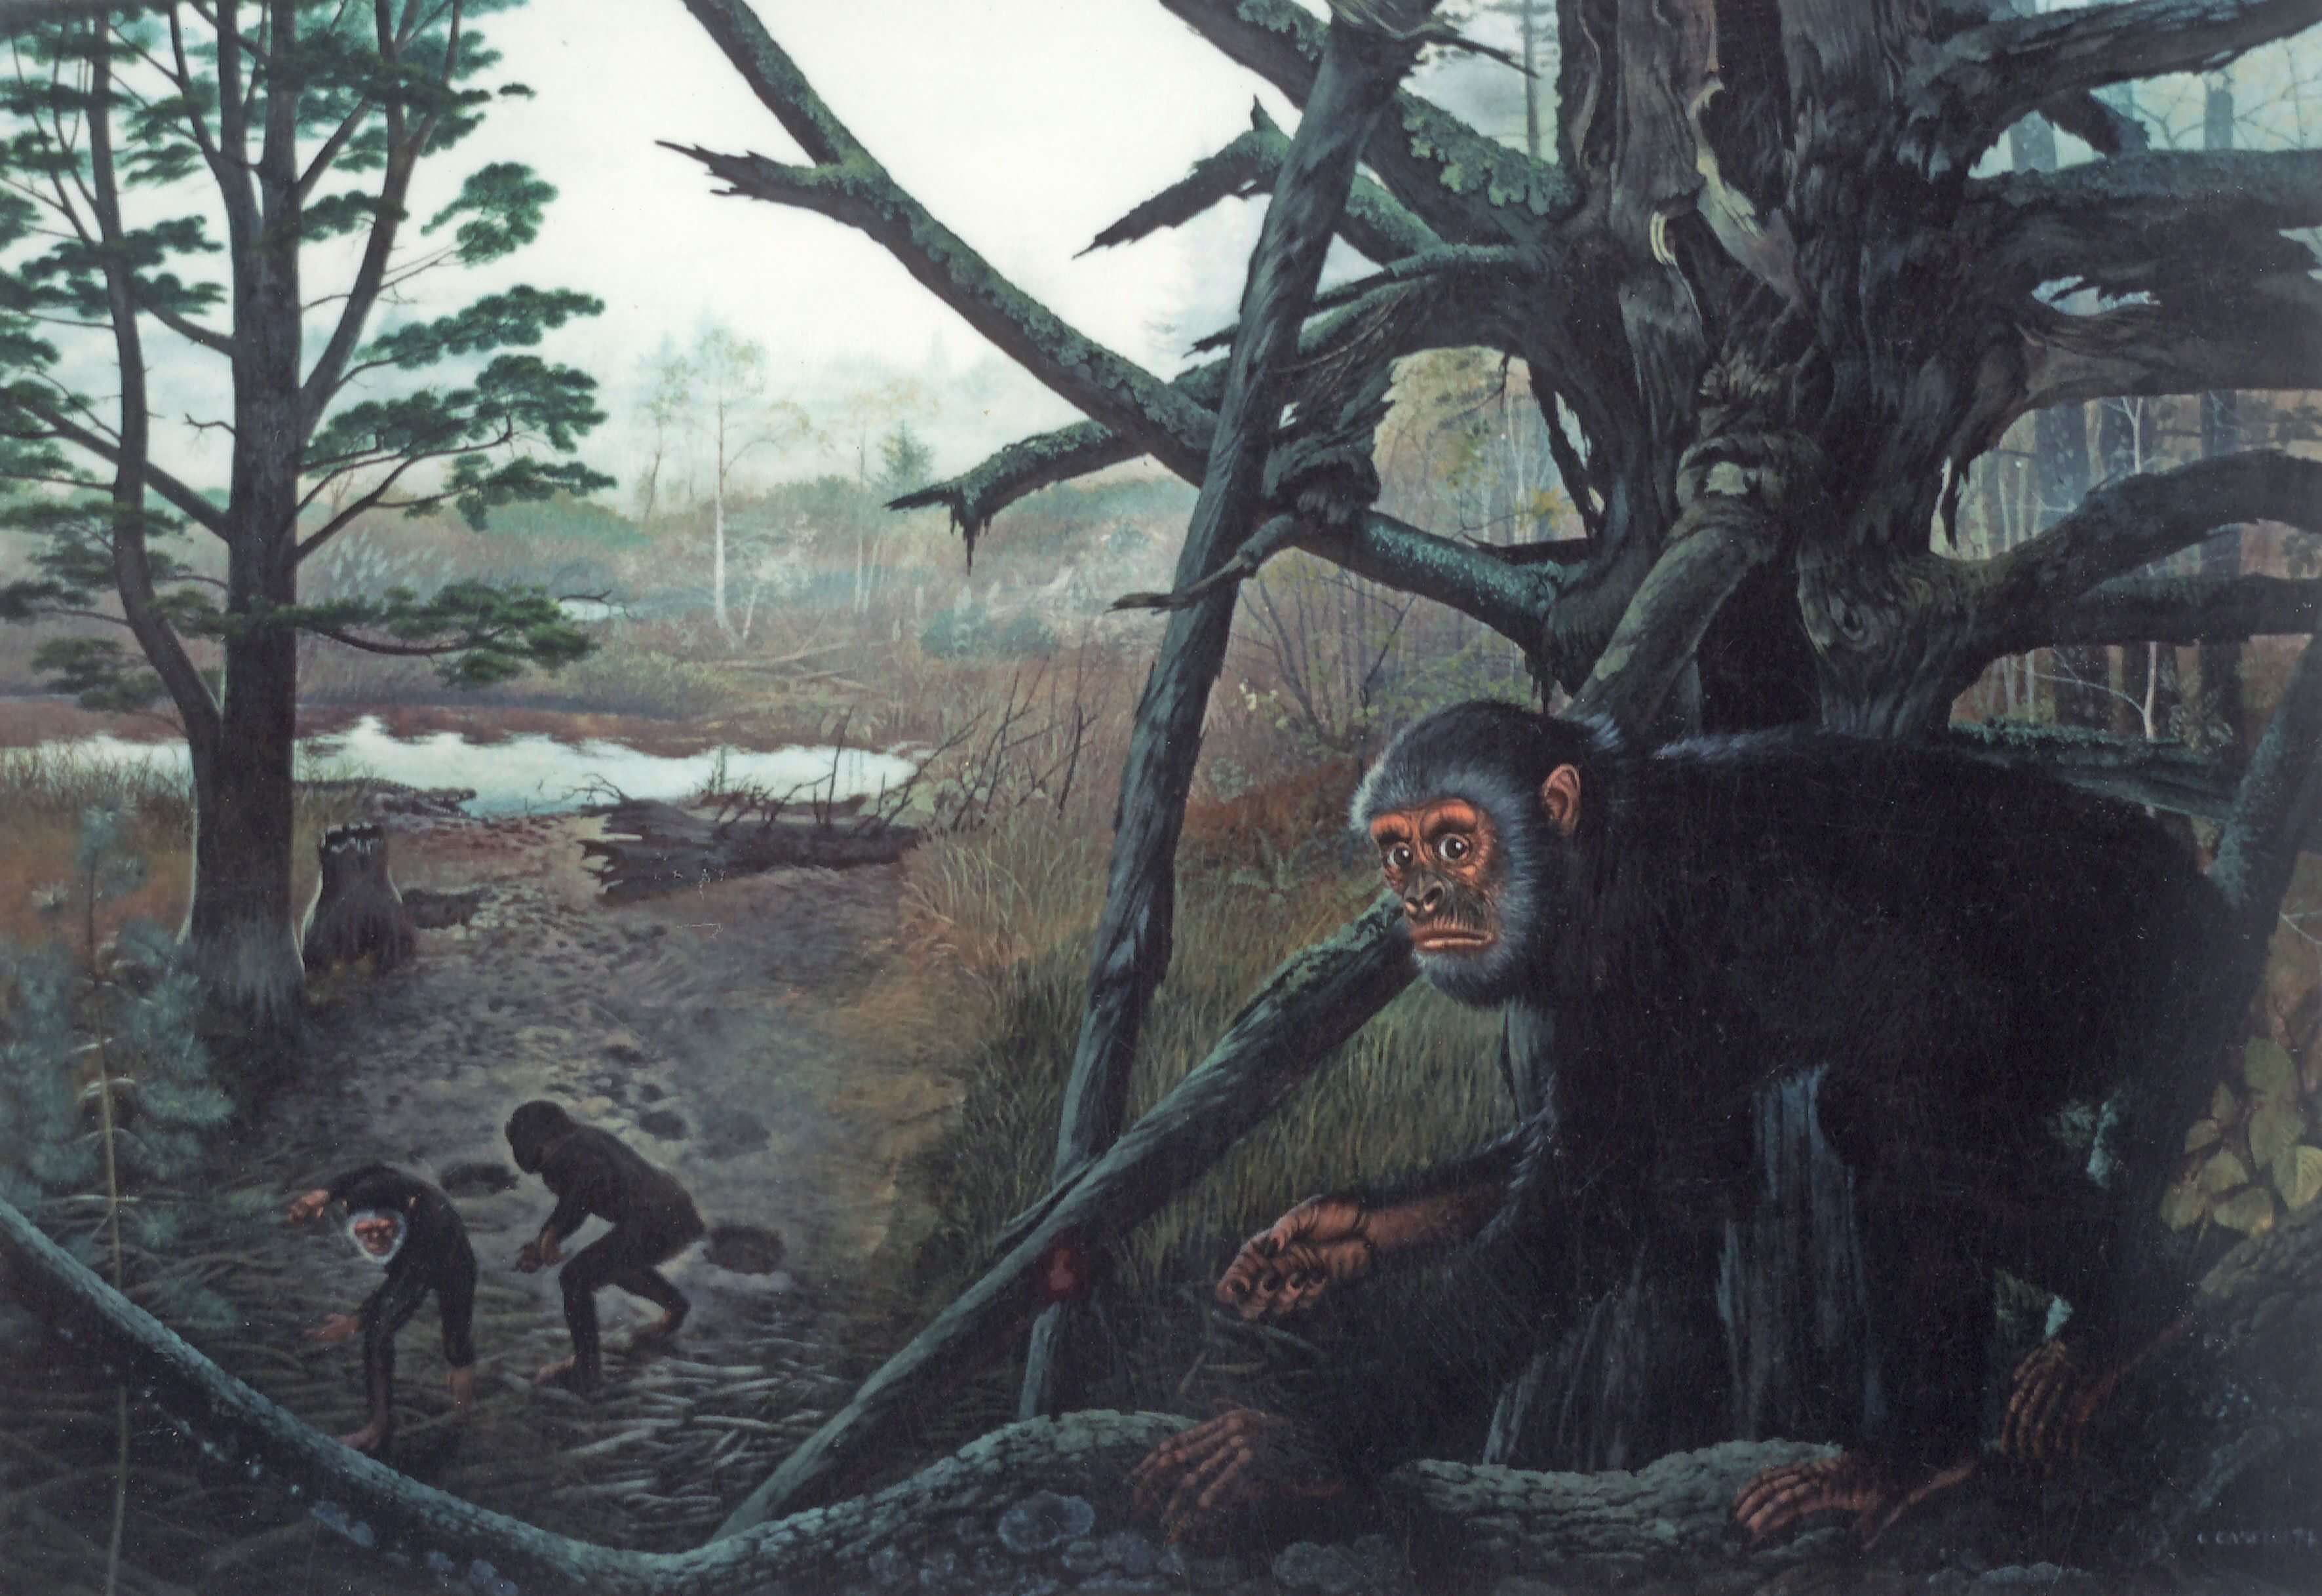 Dlaczego starożytni małpy nie umiały chodzić na dwóch nogach i nie żyli na drzewach?